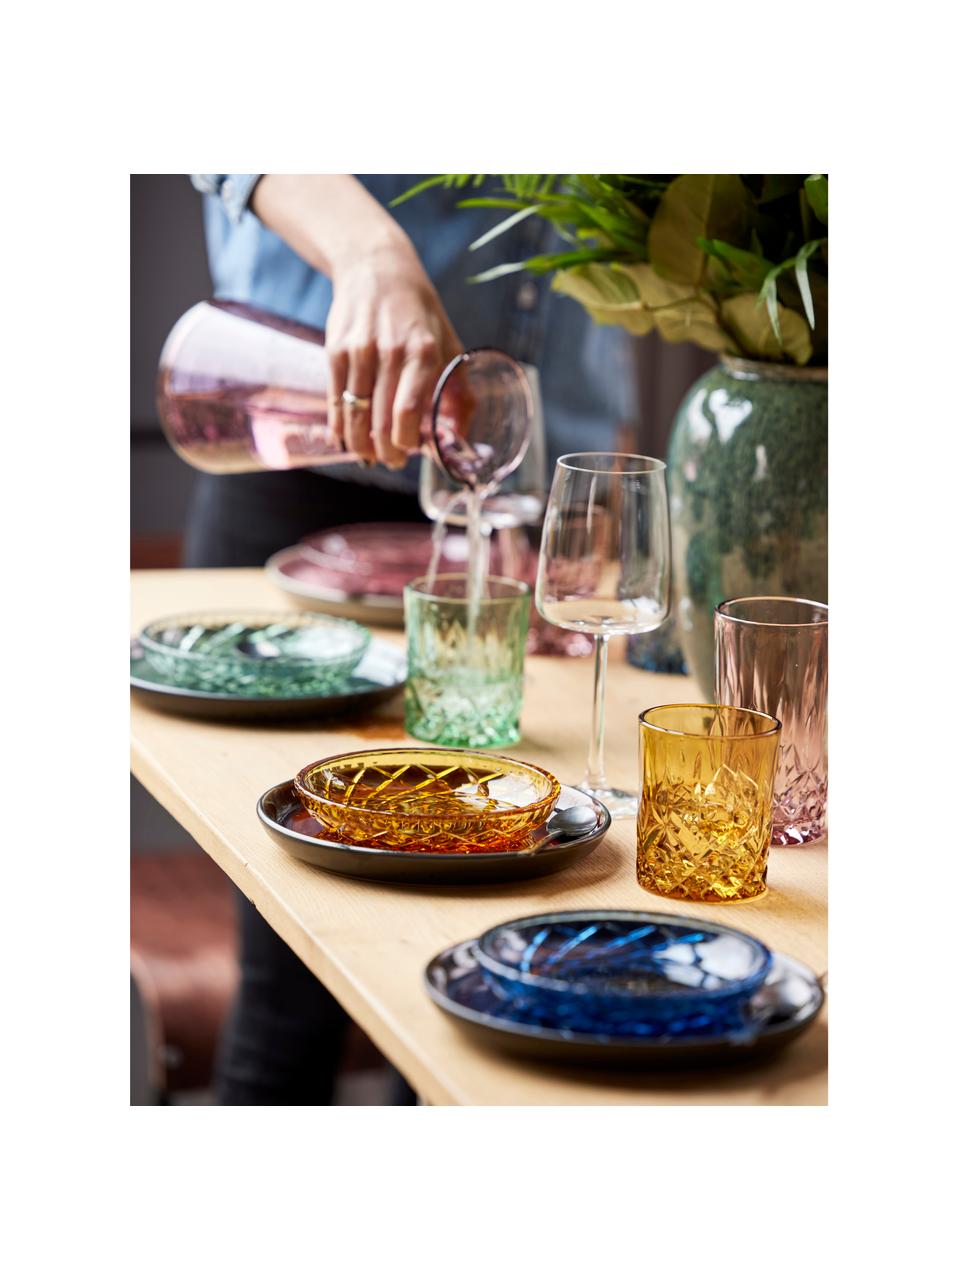 Komplet talerzy deserowych Sorrento, 4 elem., Szkło, Bursztynowy, zielony, niebieski, blady różowy, Ø 16 x W 3 cm